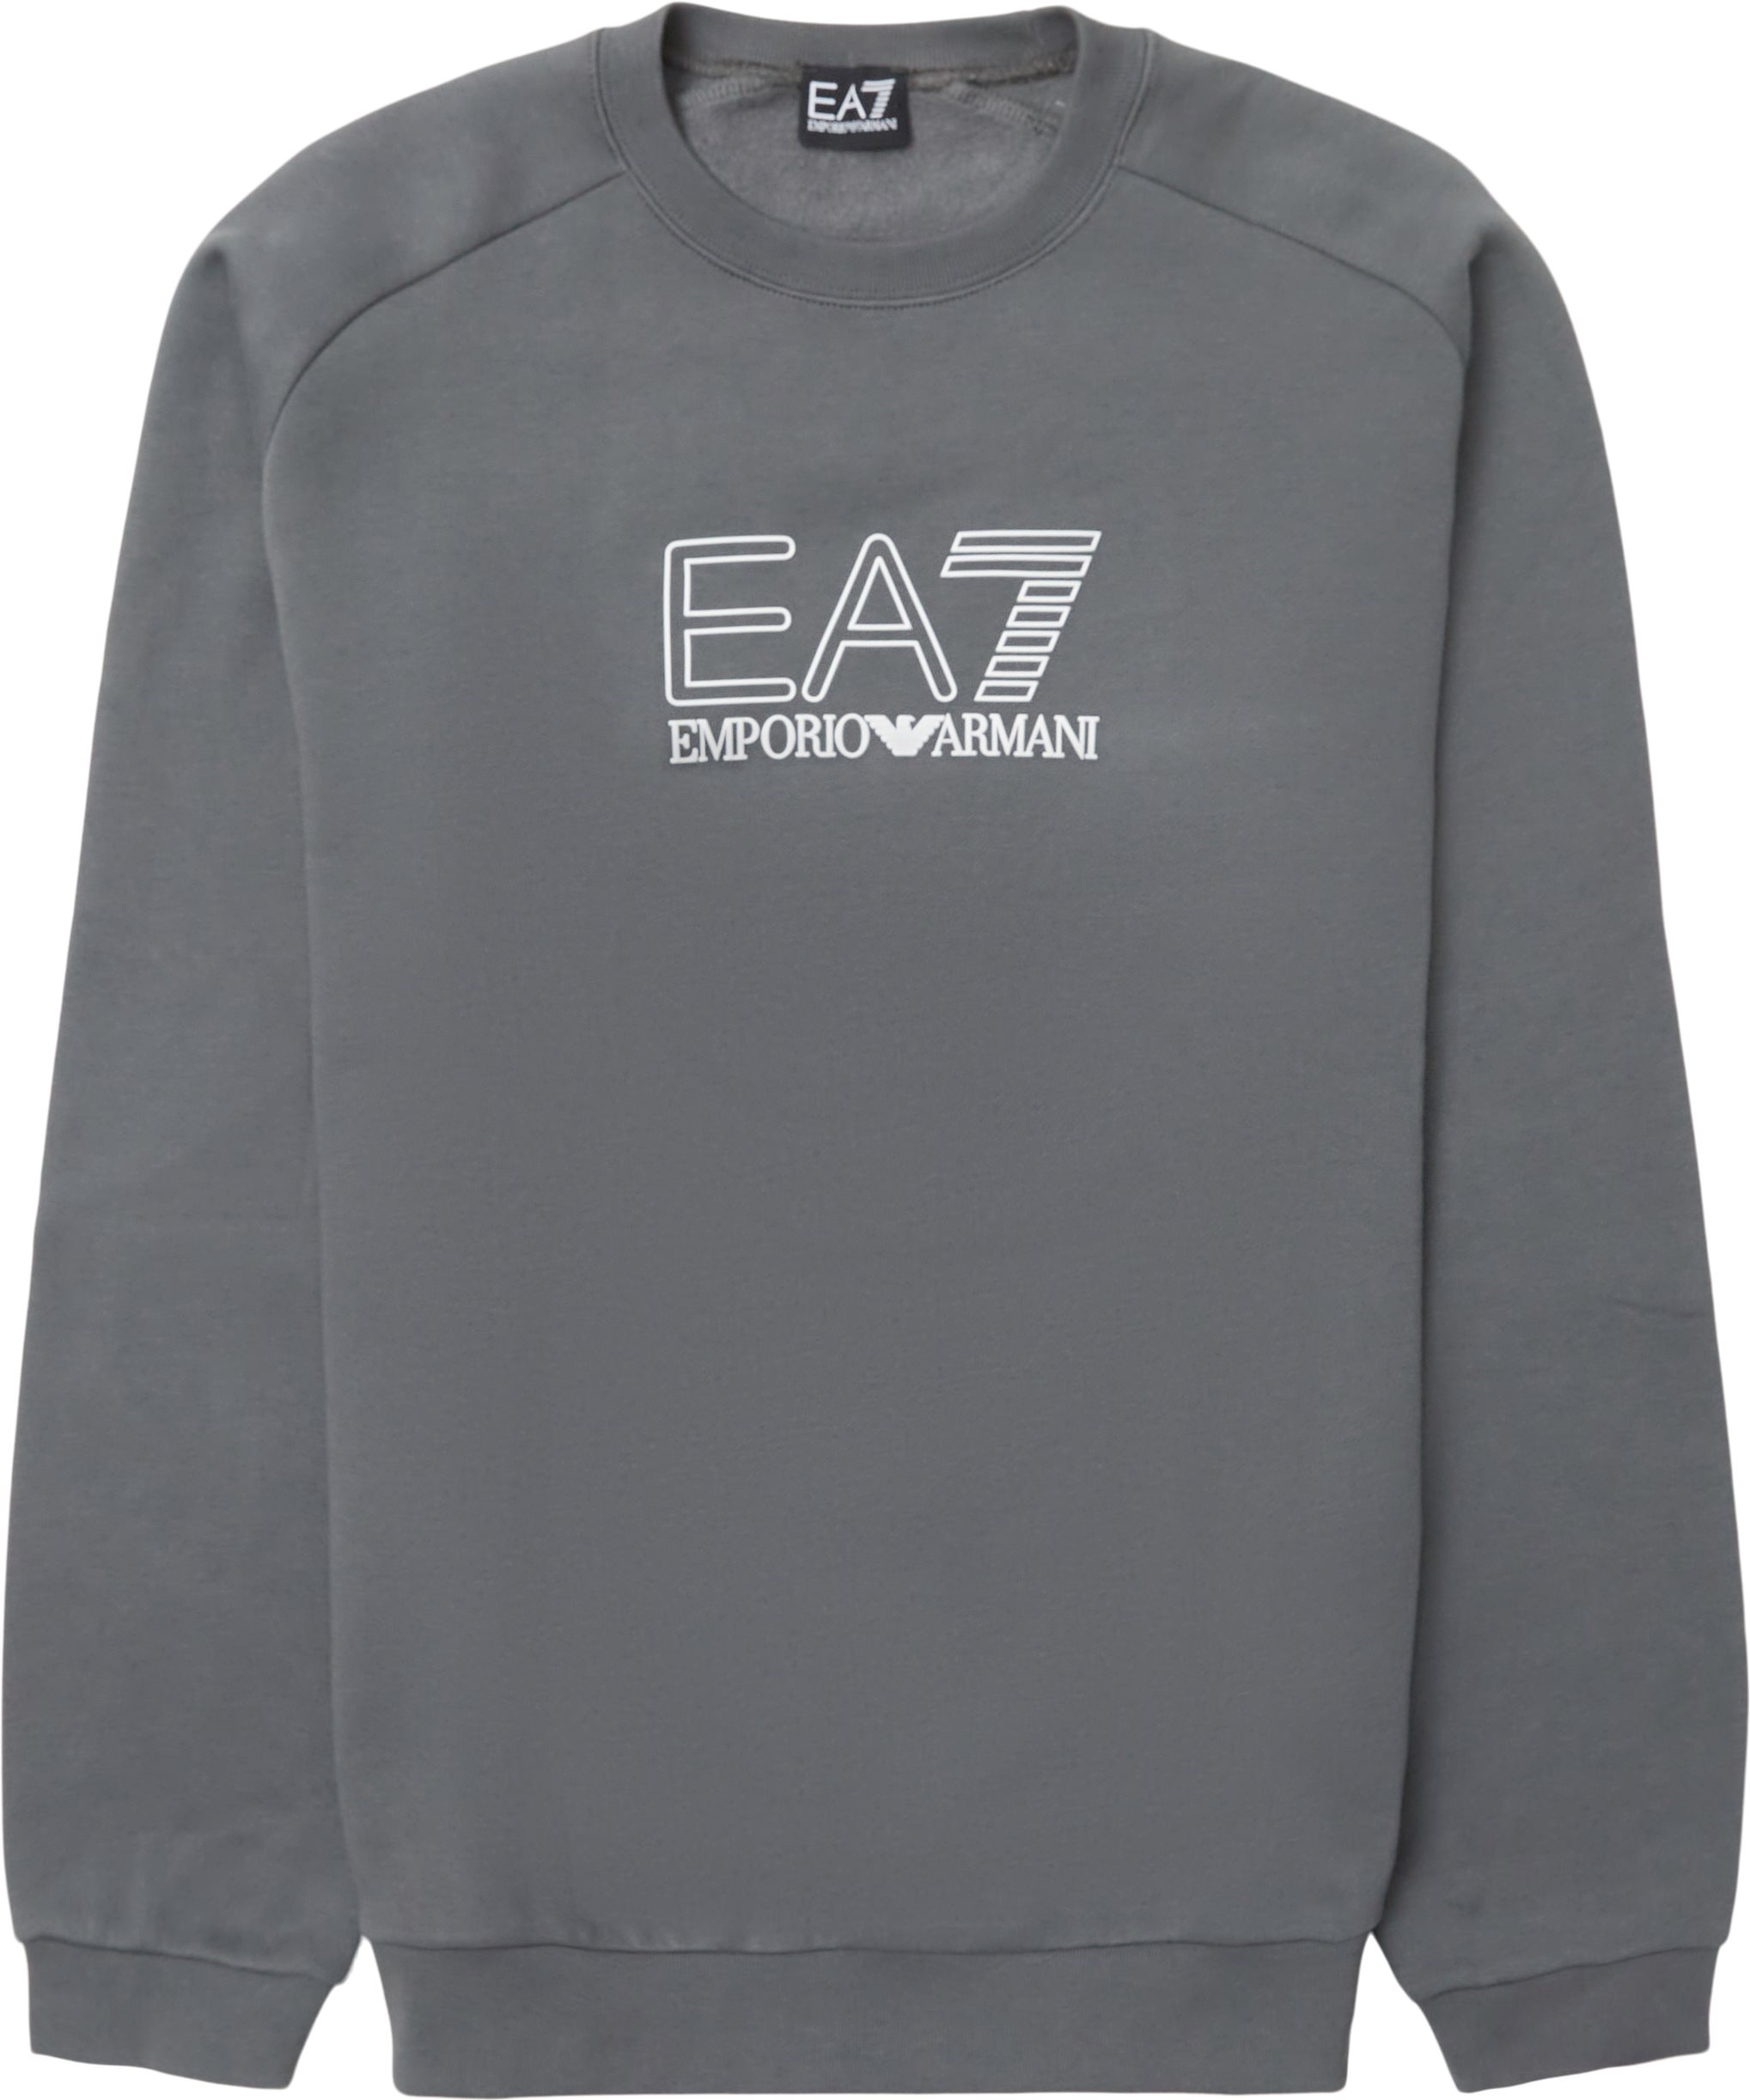 Pj07z-3lpm31 - Sweatshirts - Regular fit - Grå